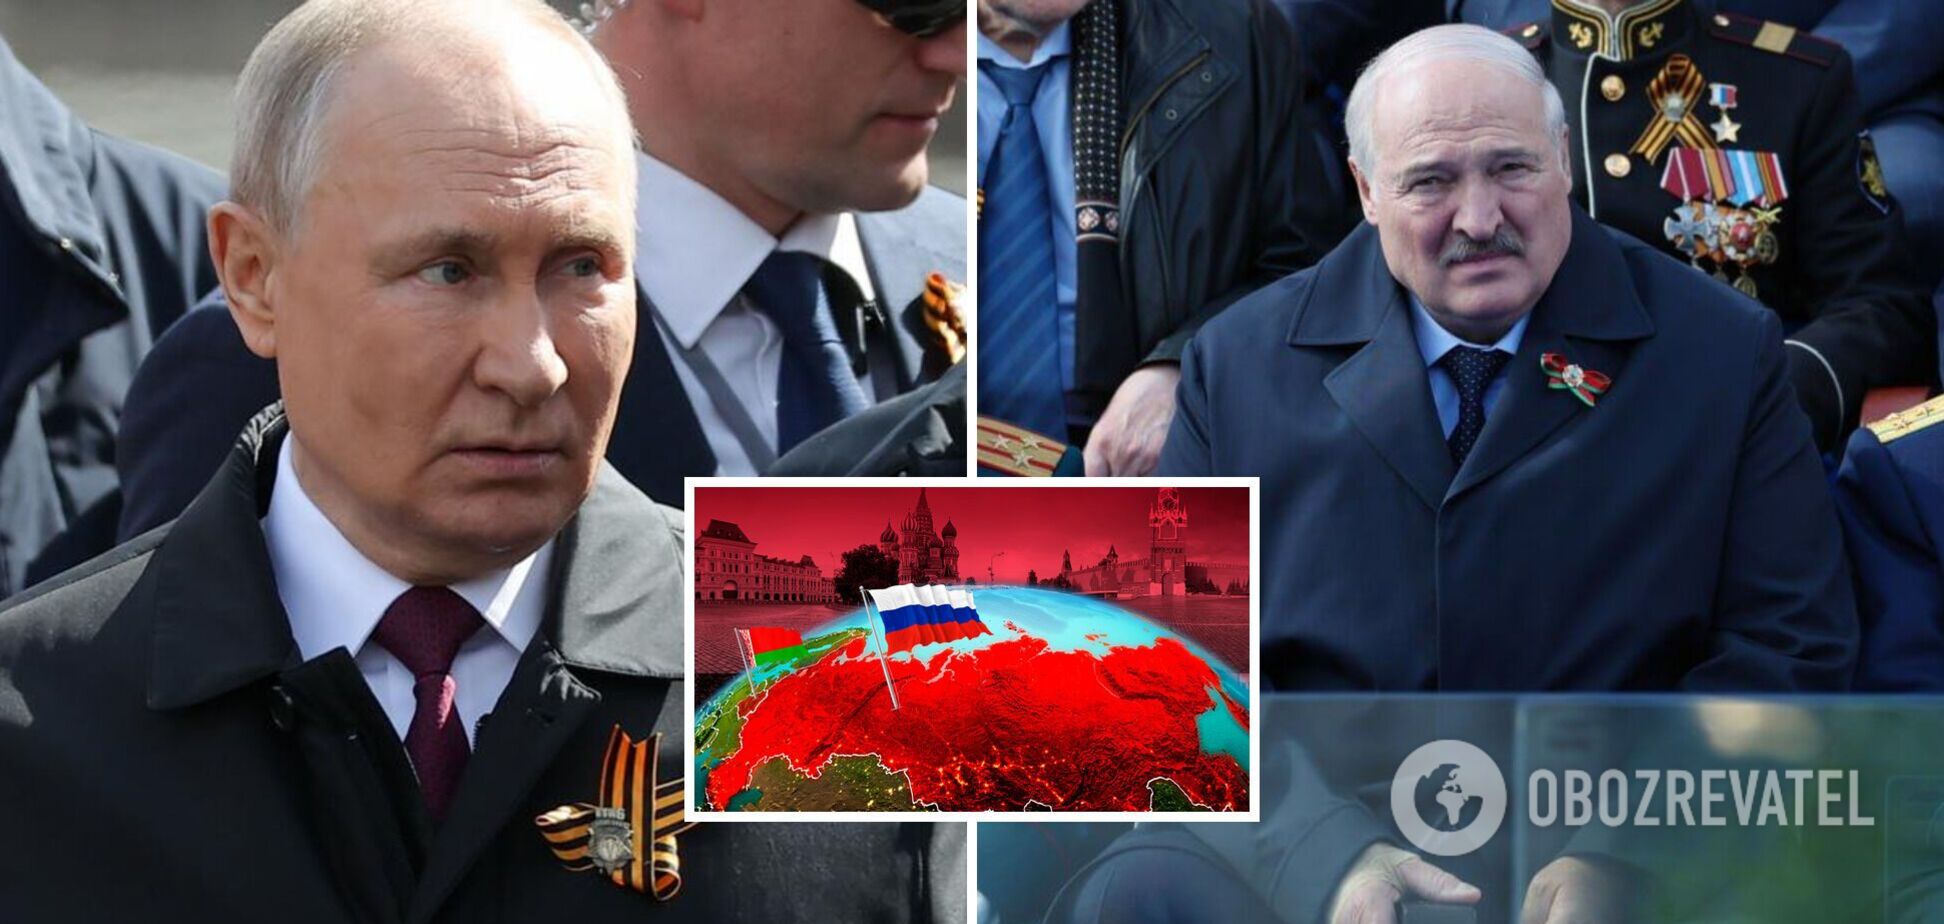 Не получилось с Украиной, взялся за Беларусь: Путин ждет кончину Лукашенко